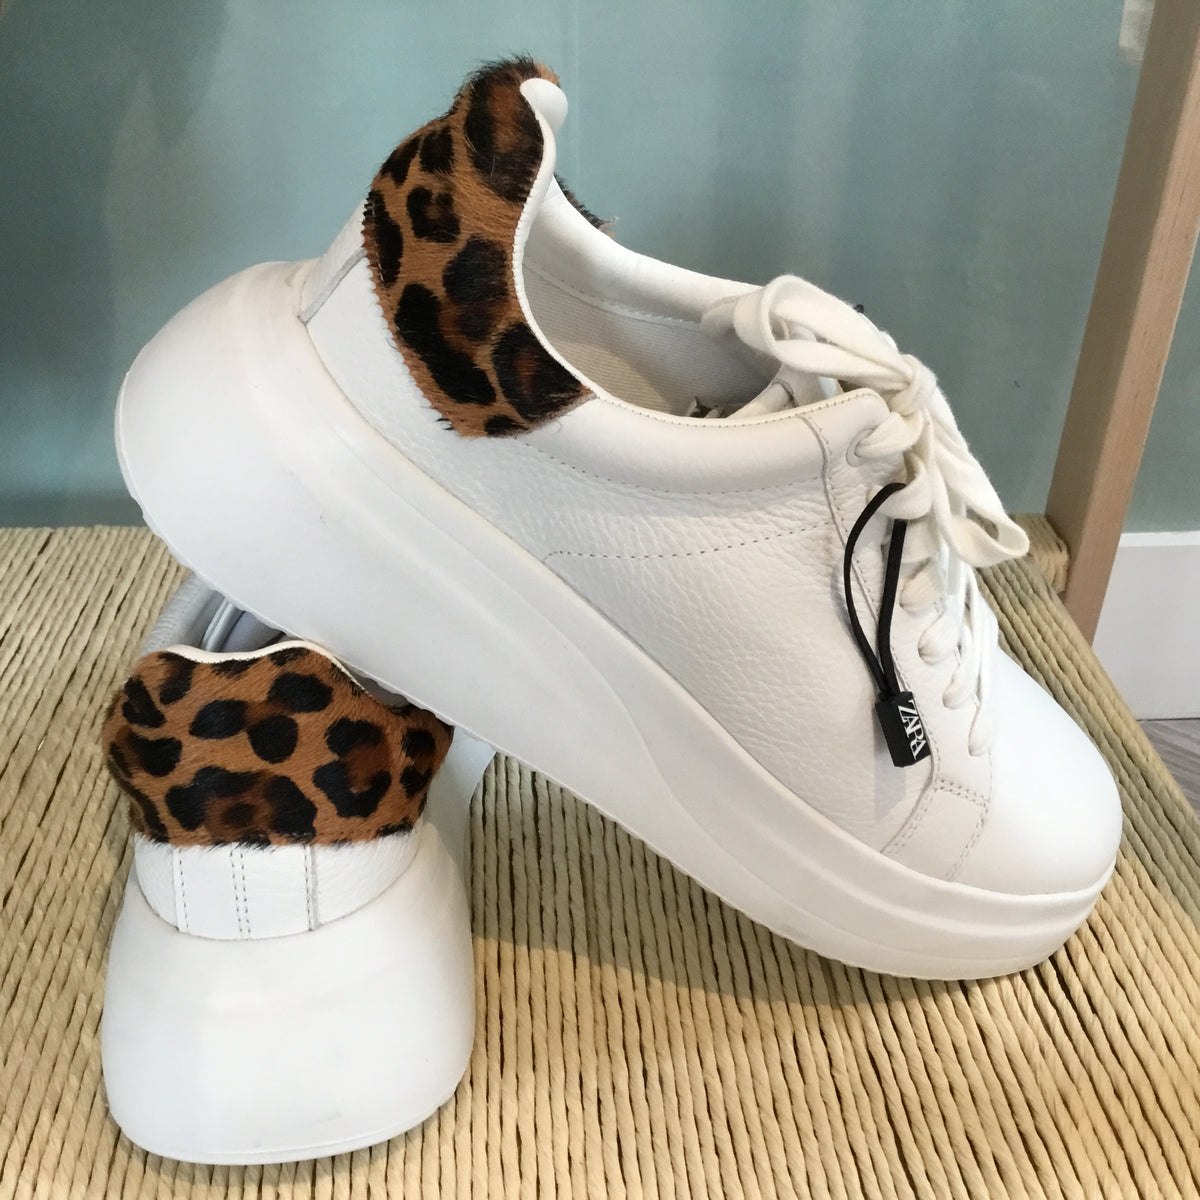 Zara leather flatform trainer White/Leopard 40